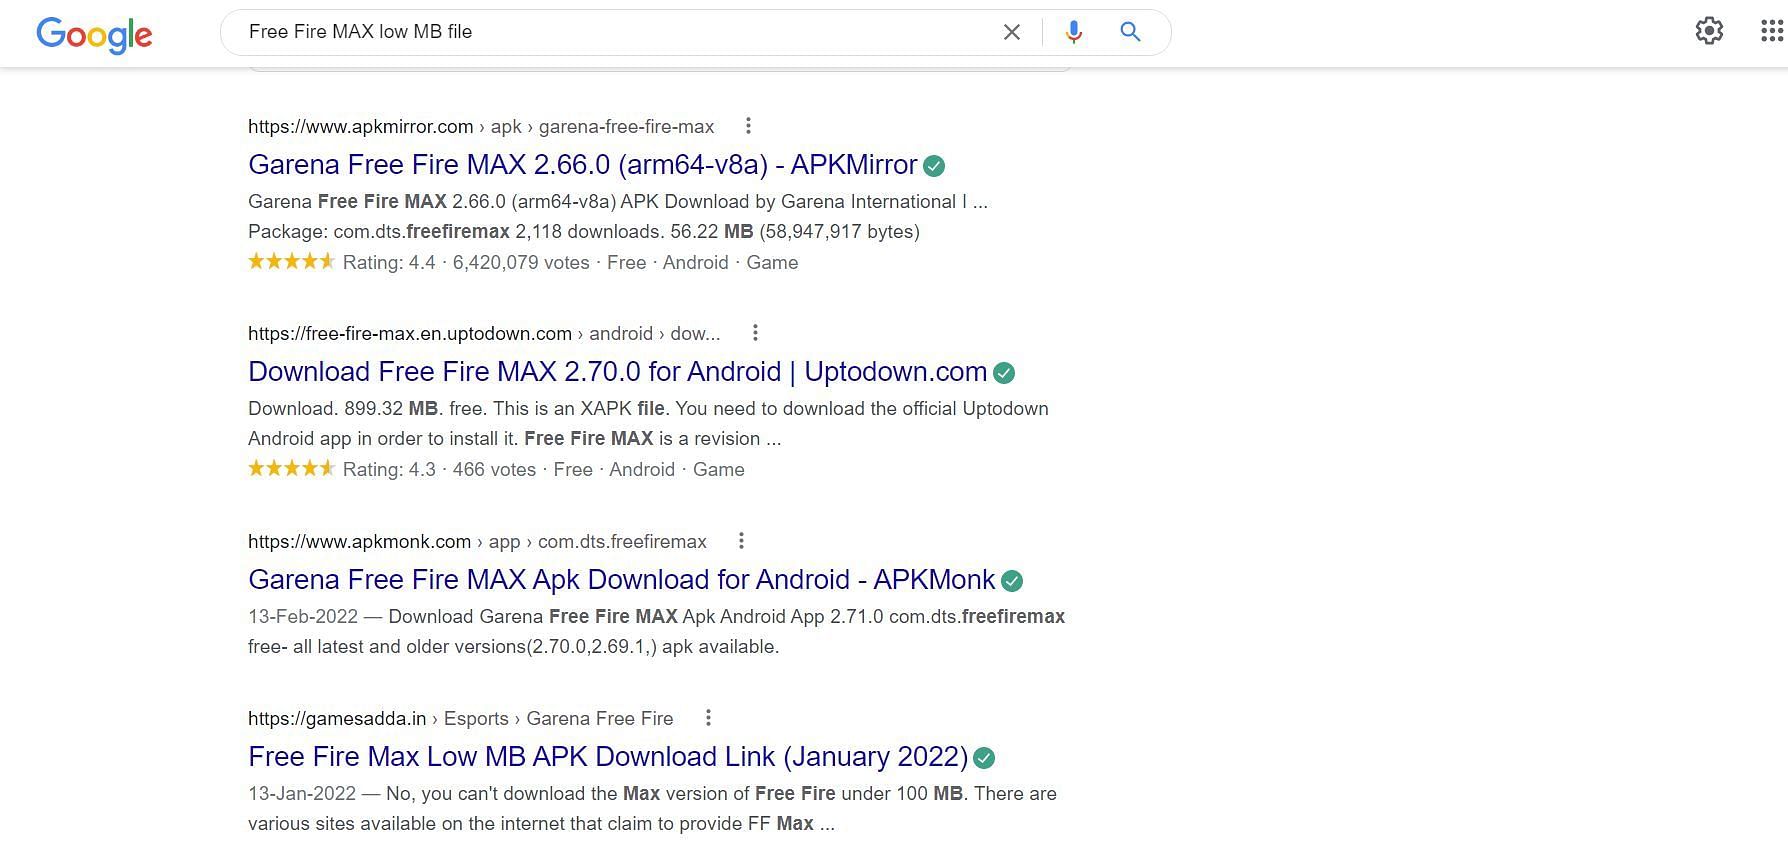 نتائج بحث مختلفة في Google عن الملفات منخفضة الميغابايت (الصورة عبر Google)